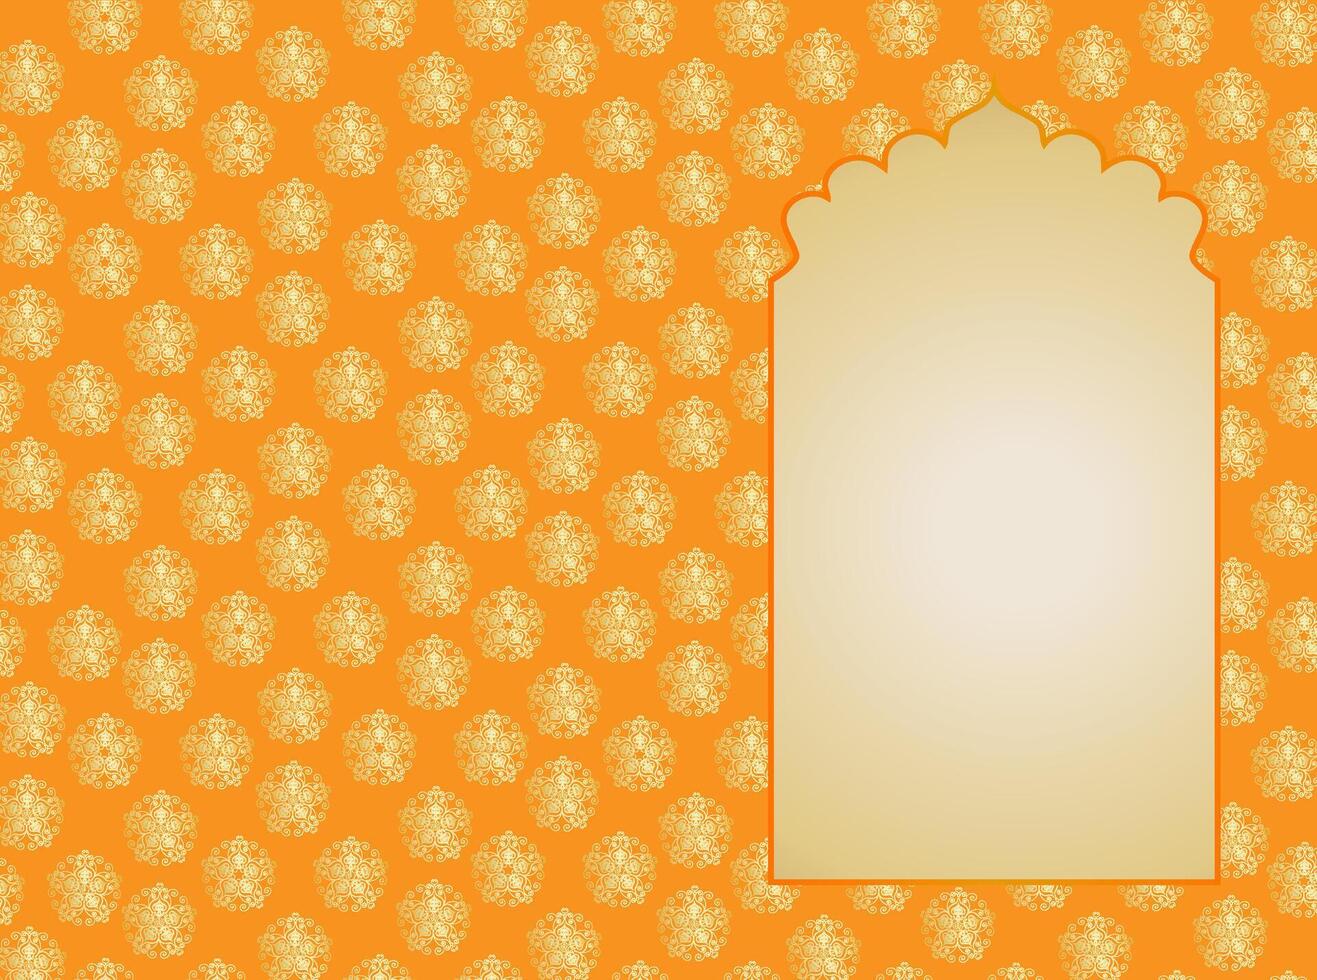 Indisch oranje gouden venster in mughal stijl vector oosters kader ontwerp sjabloon, plaats voor tekst ansichtkaart, bruiloft uitnodiging